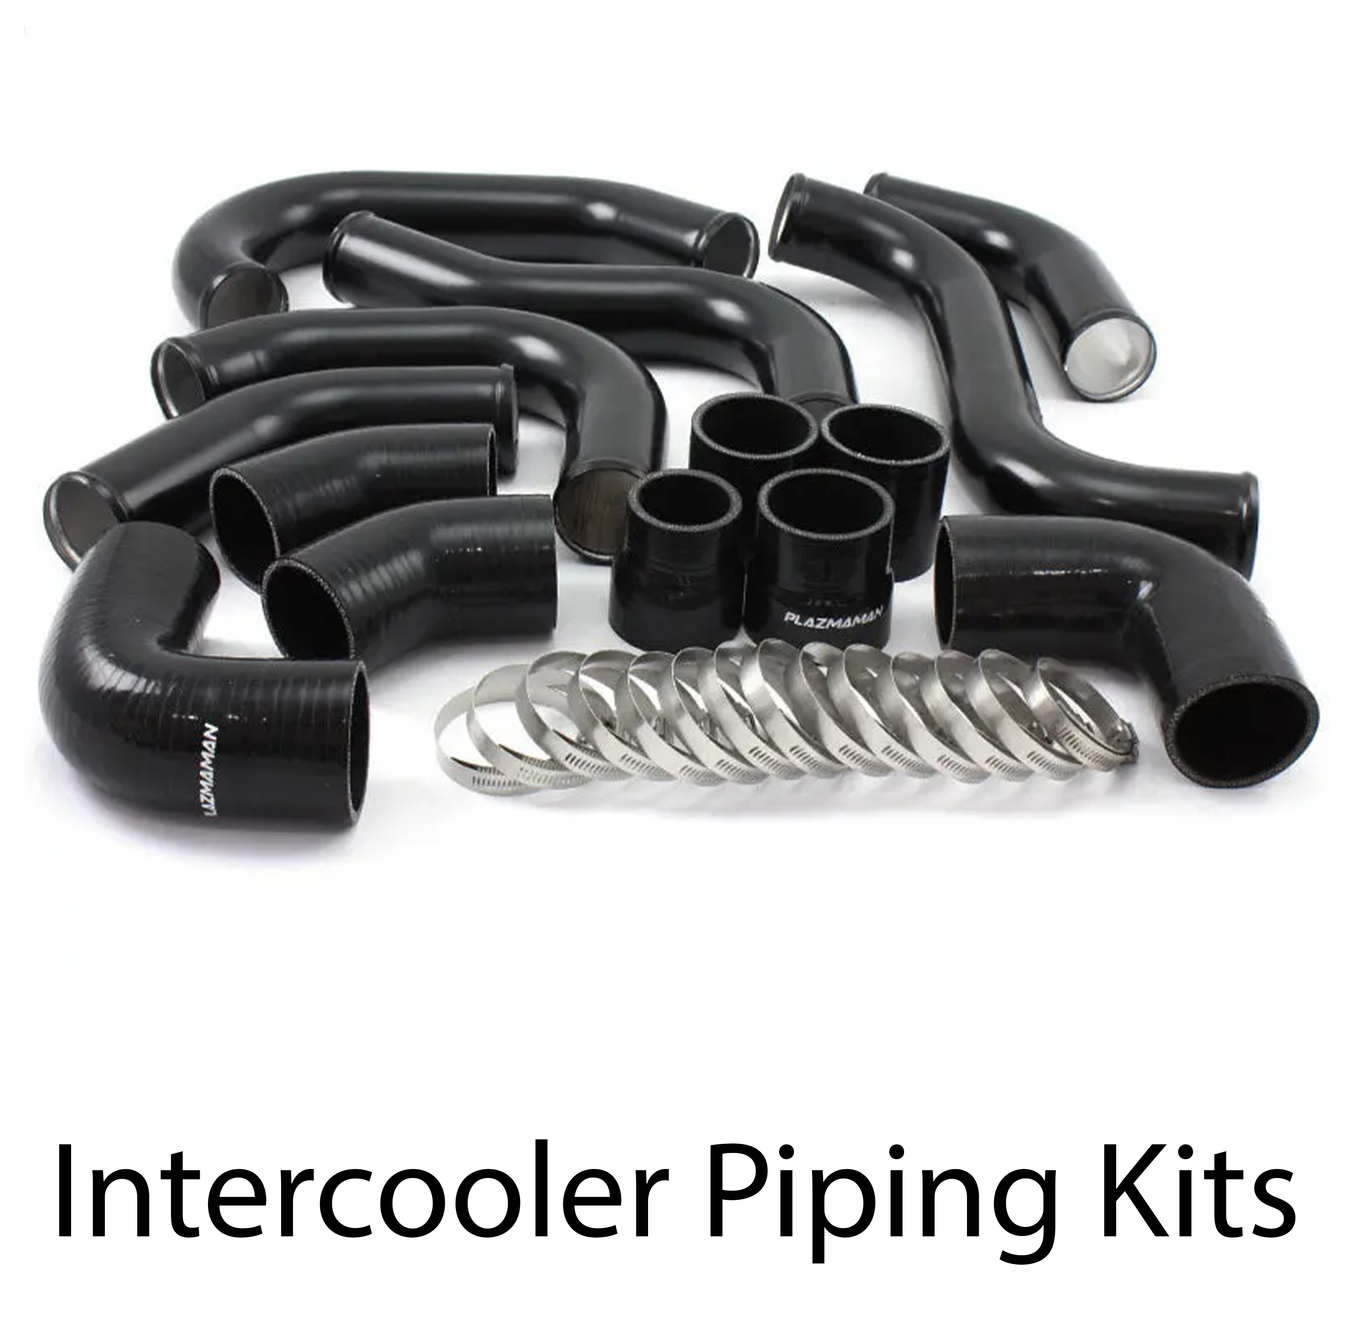 Plazmaman - Intercooler Piping Kits